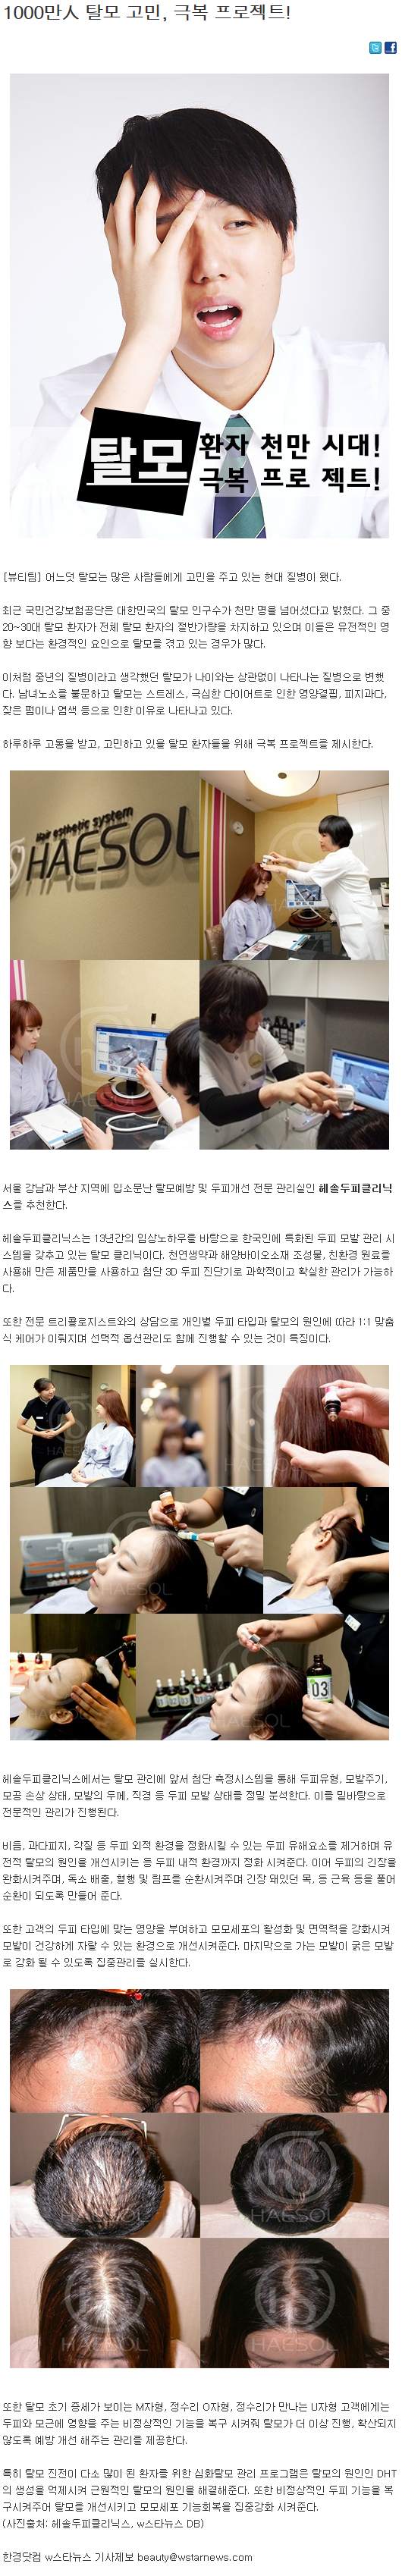 [한경닷컴-2014.08.21] 1000만人 탈모 고민, 극복 프로젝트!